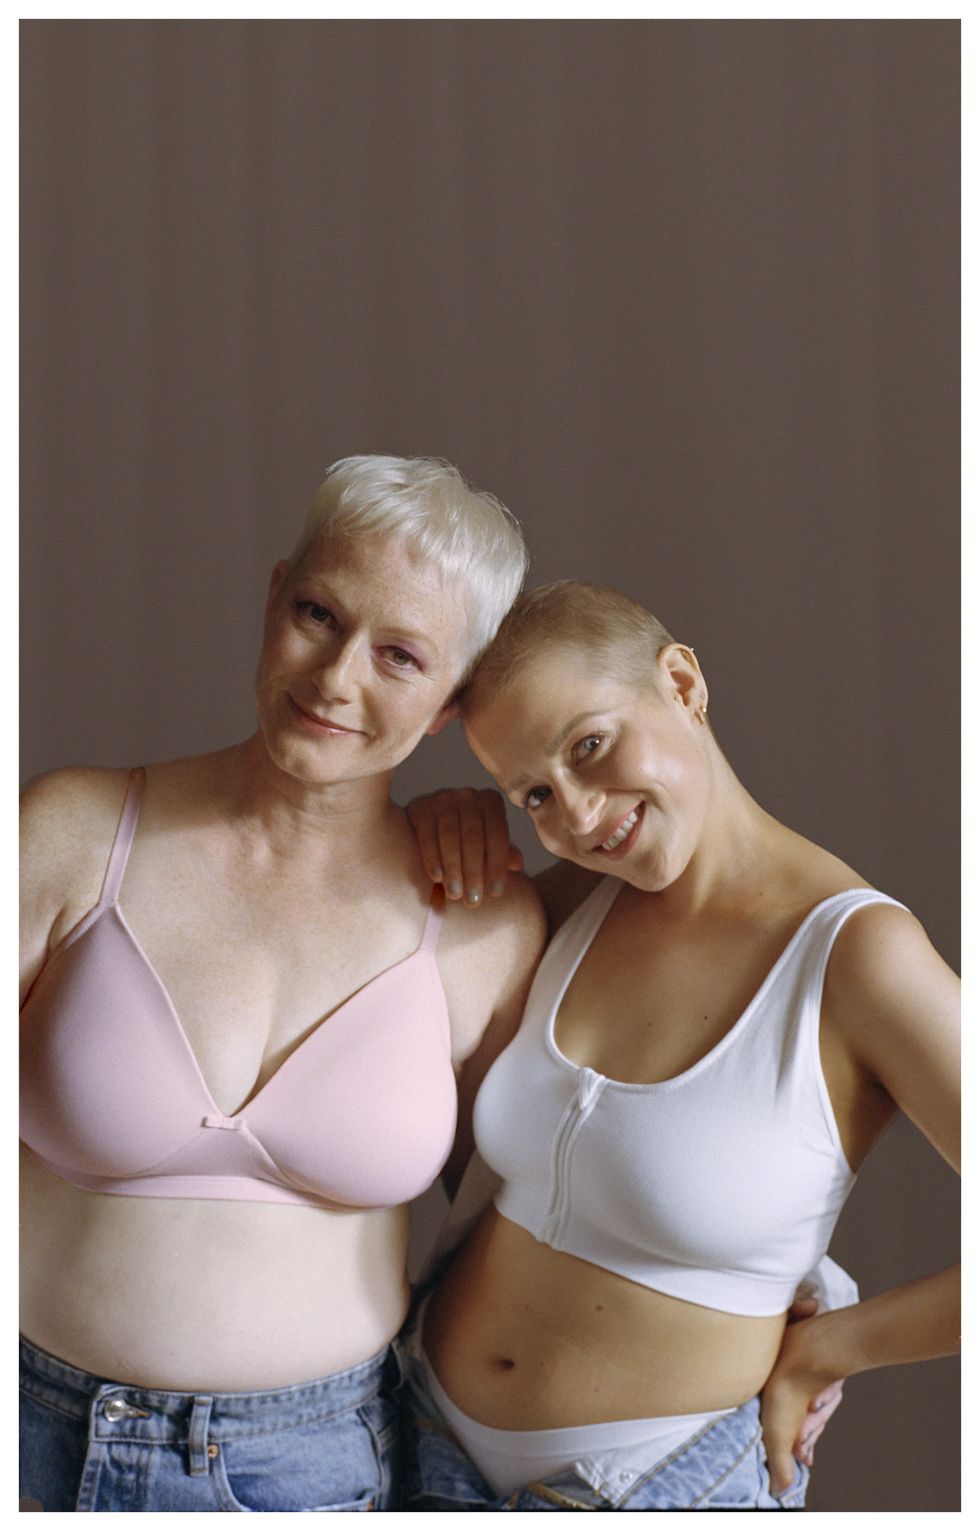 reggiseni mastectomia intimo donna tumore al seno